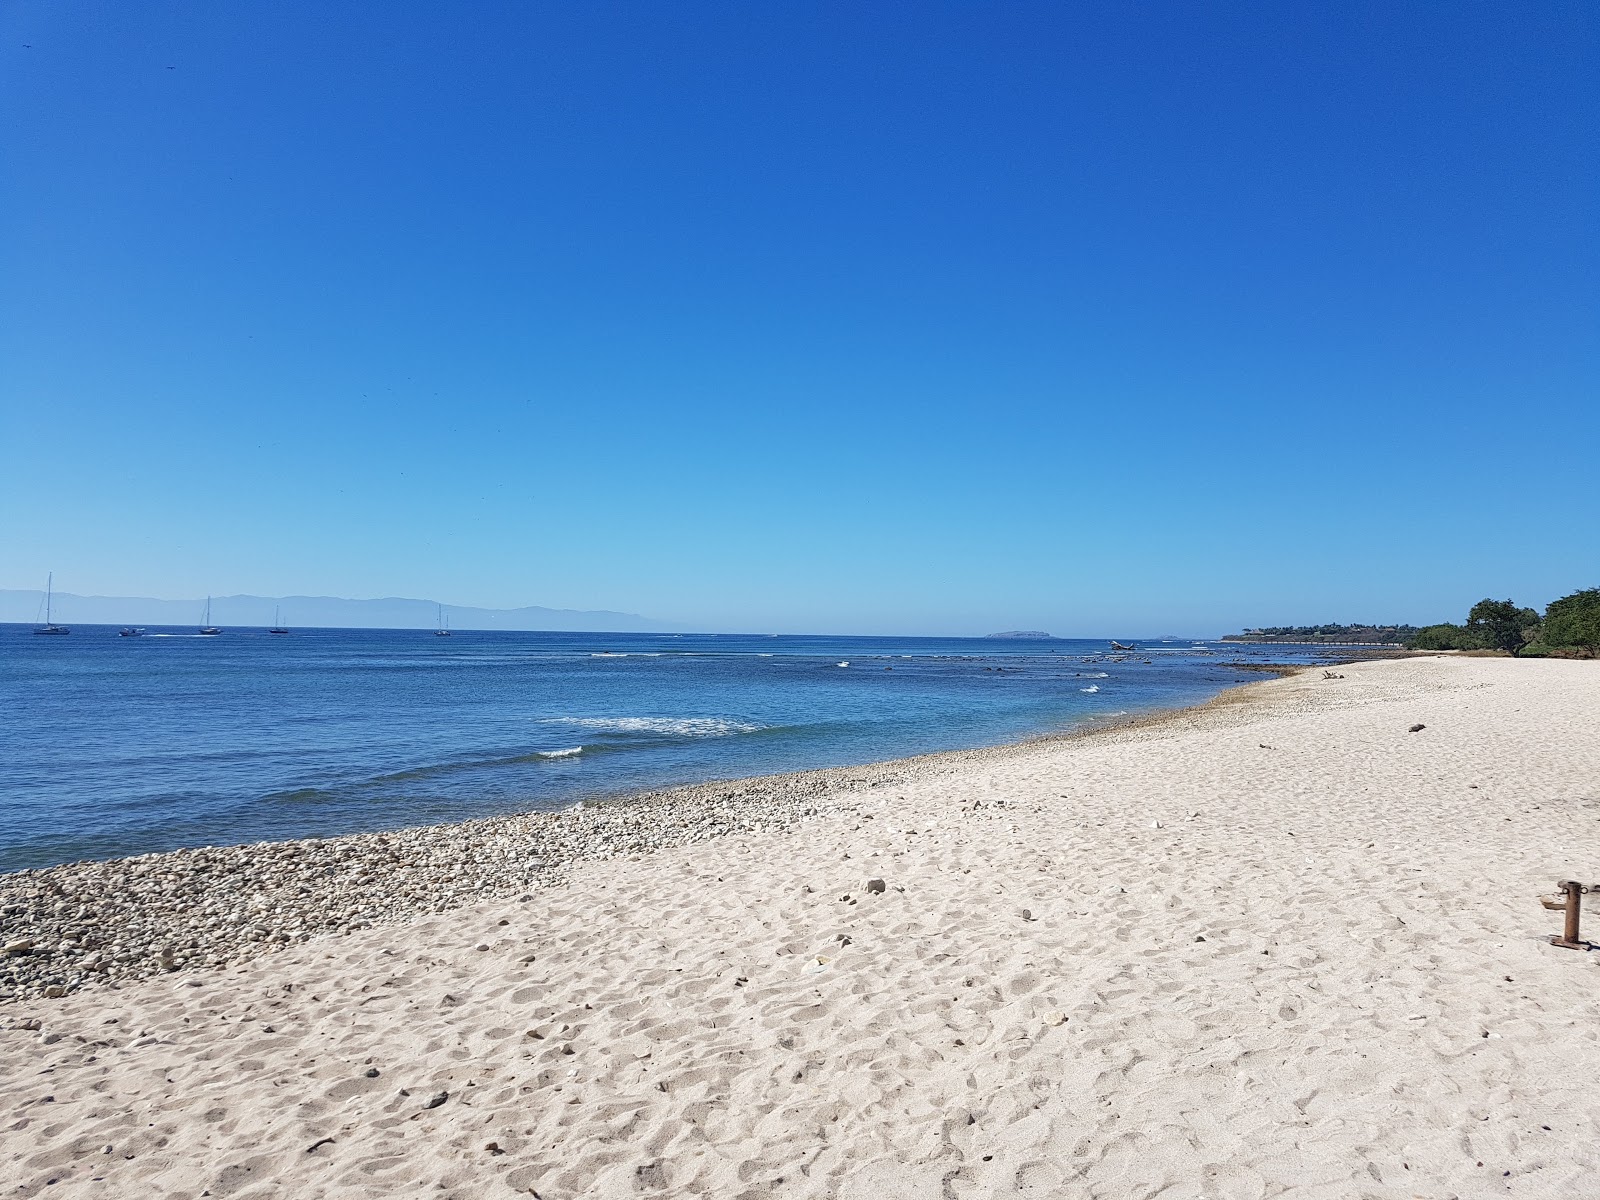 Zdjęcie Punta Mita beach - popularne miejsce wśród znawców relaksu